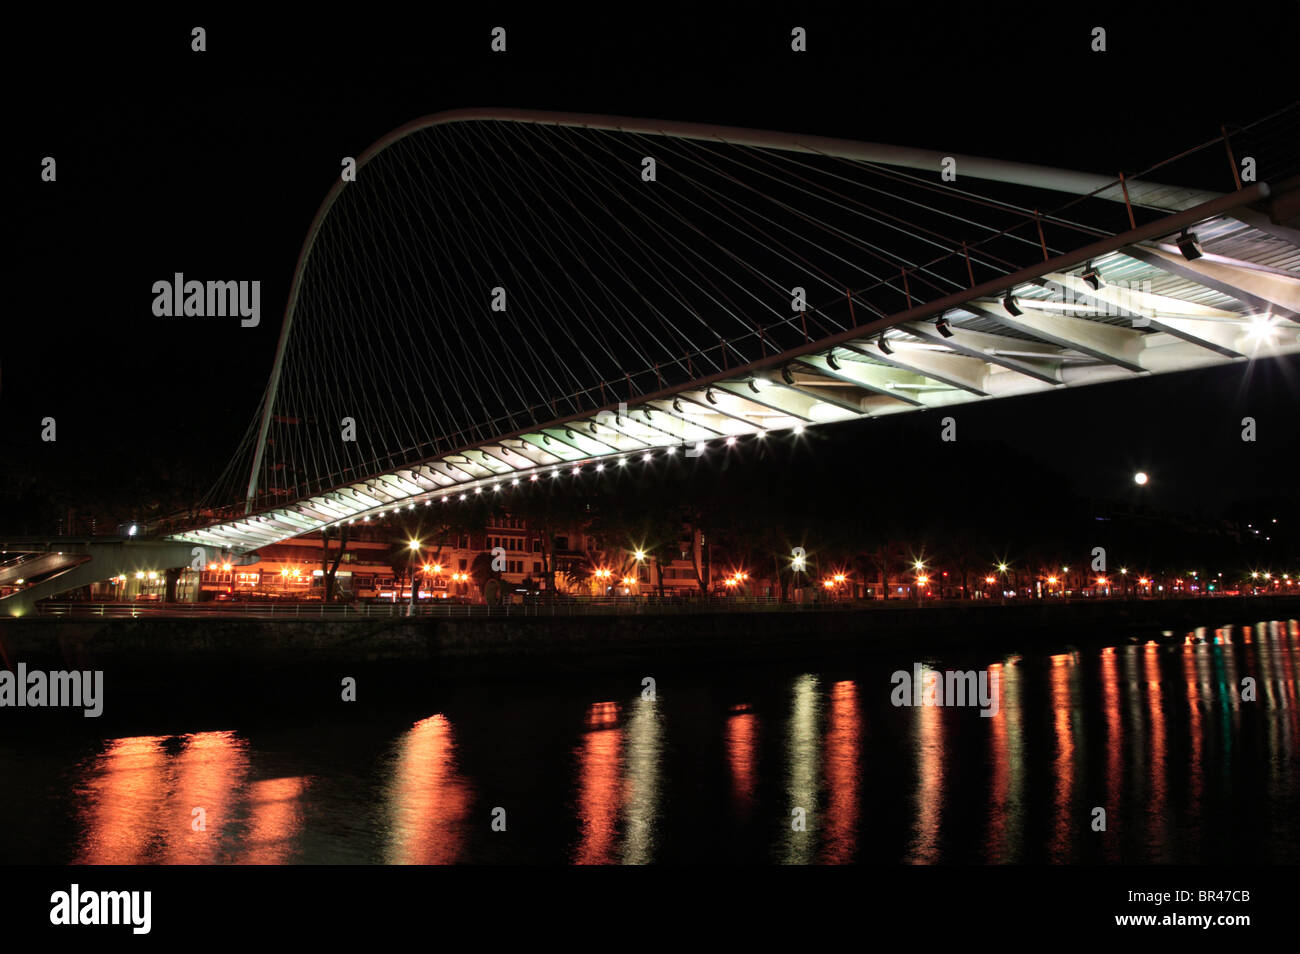 Immagine notturna del ponte Zubizuri attraverso il fiume Nervion di Bilbao, Spagna. Foto Stock